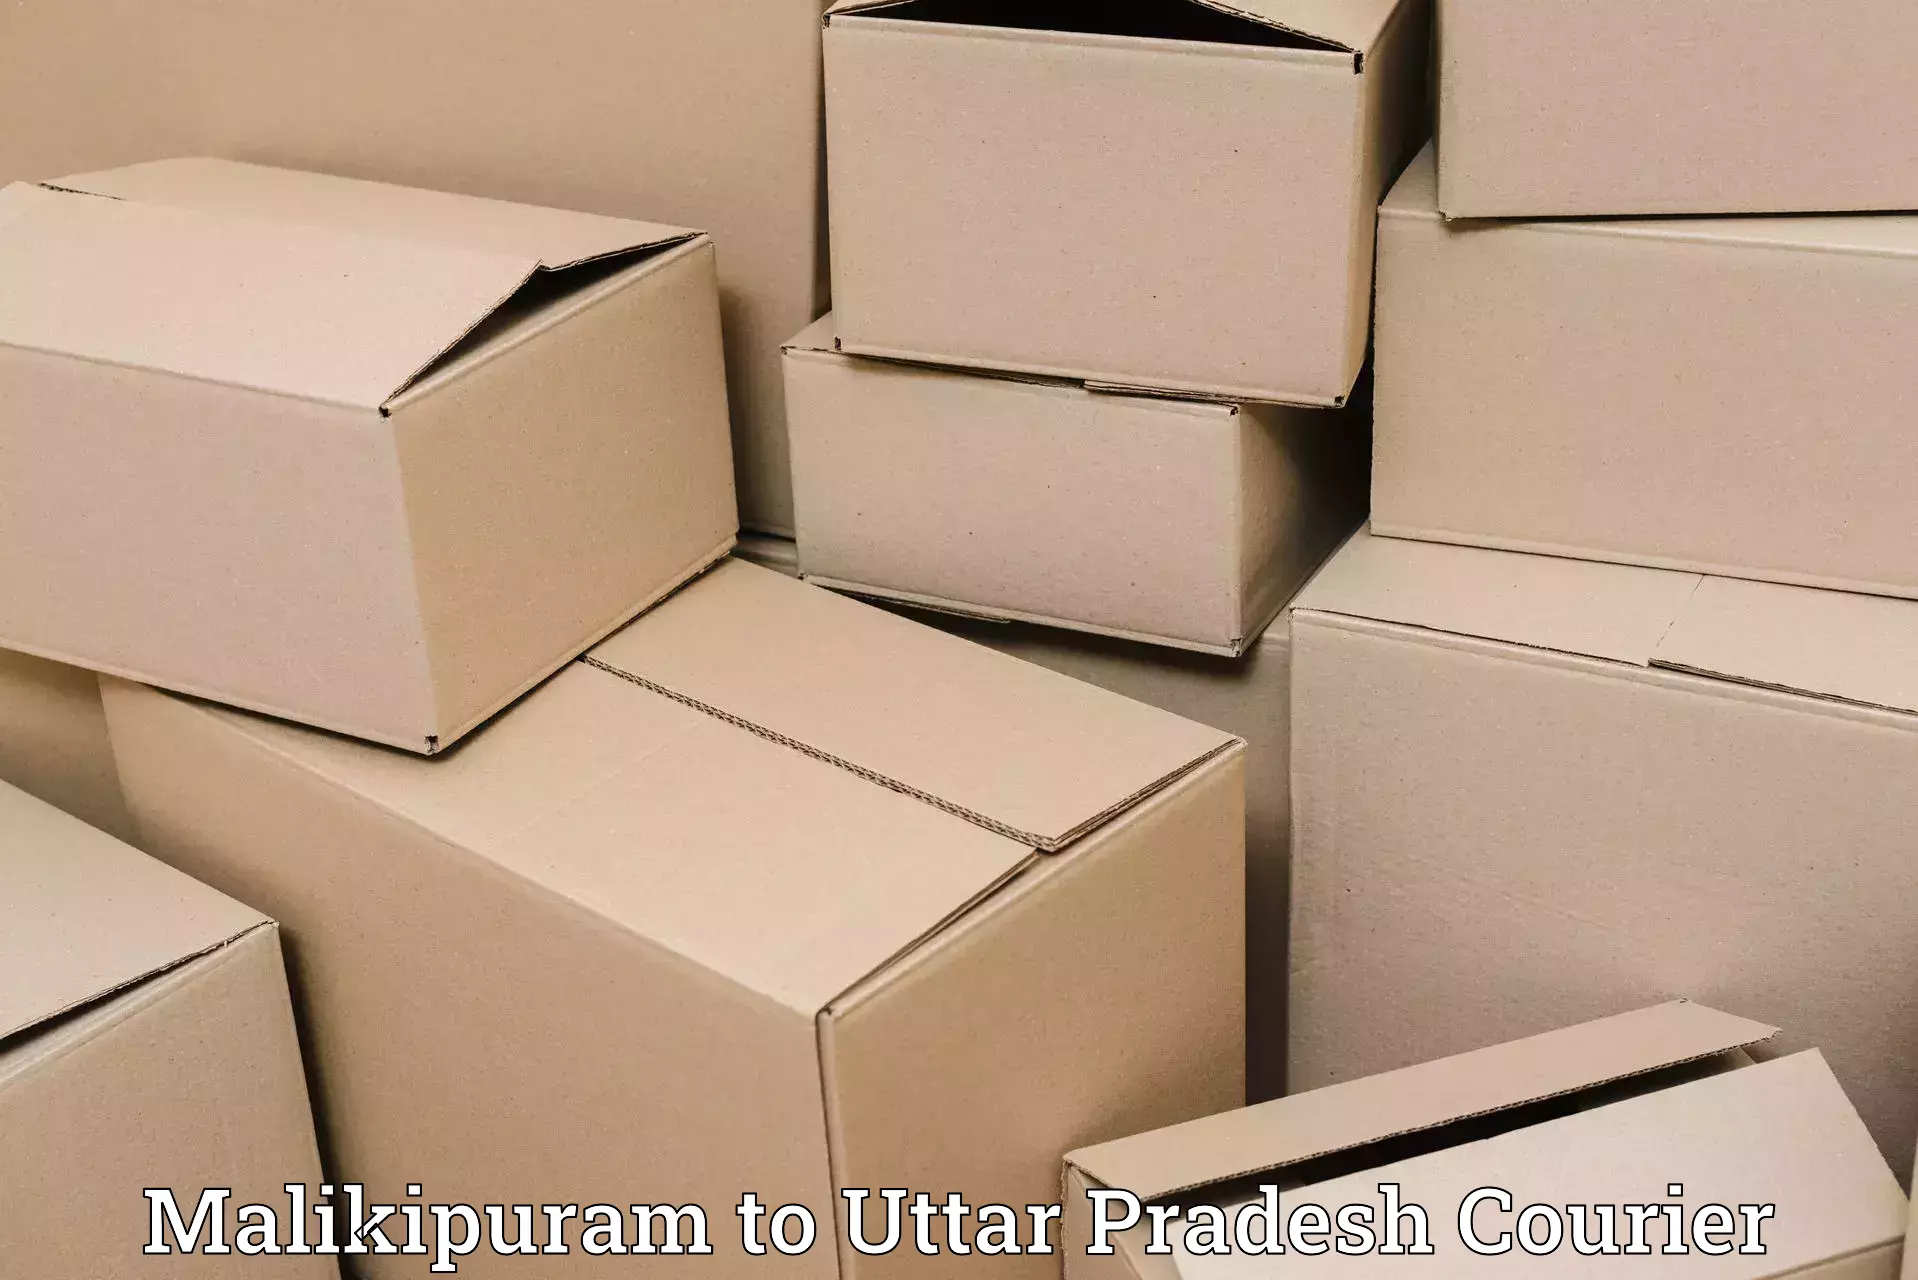 Global courier networks Malikipuram to Uttar Pradesh